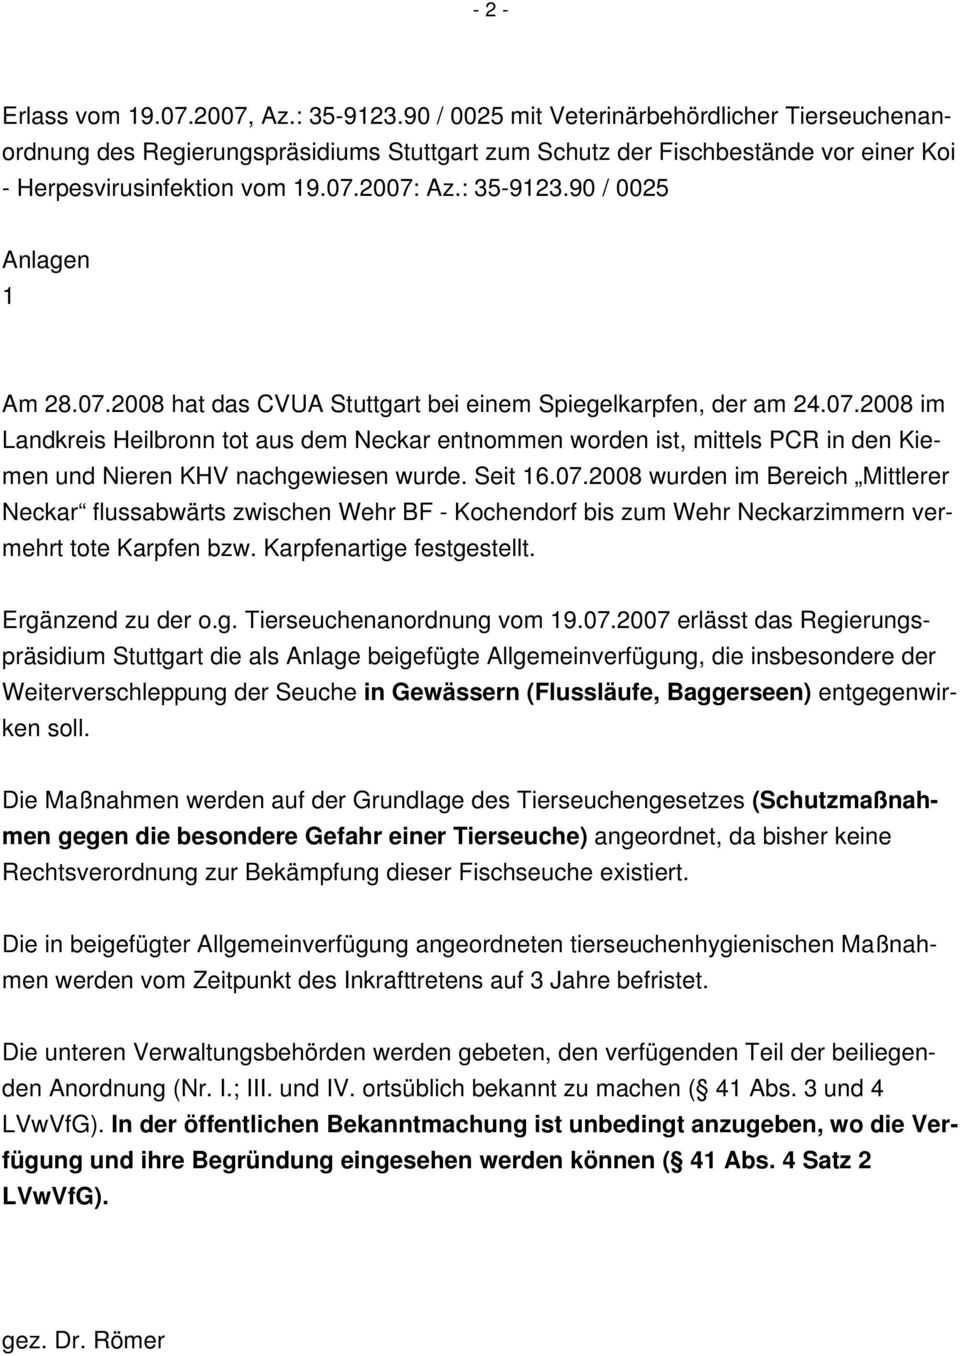 90 / 0025 Anlagen 1 Am 28.07.2008 hat das CVUA Stuttgart bei einem Spiegelkarpfen, der am 24.07.2008 im Landkreis Heilbronn tot aus dem Neckar entnommen worden ist, mittels PCR in den Kiemen und Nieren KHV nachgewiesen wurde.